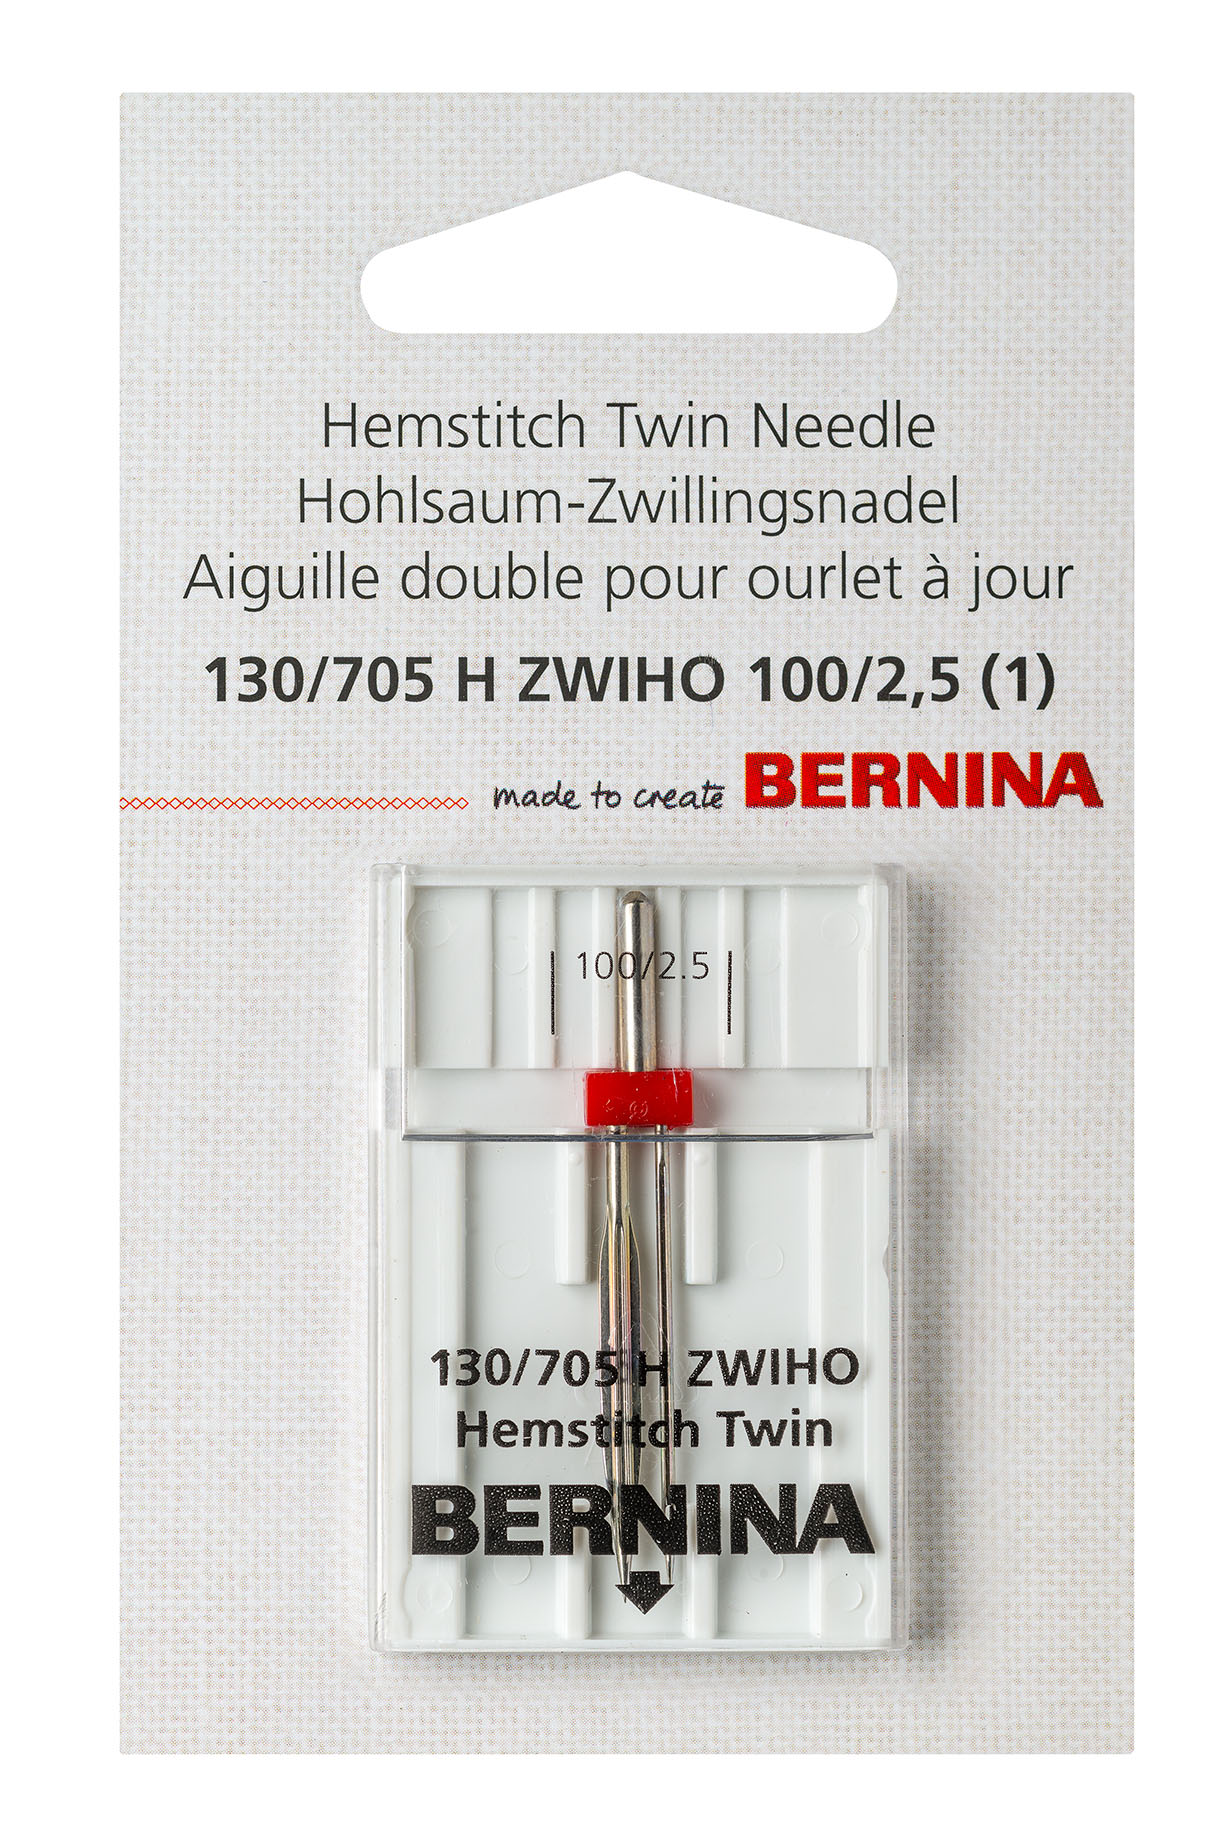 Hemstitch twin needle